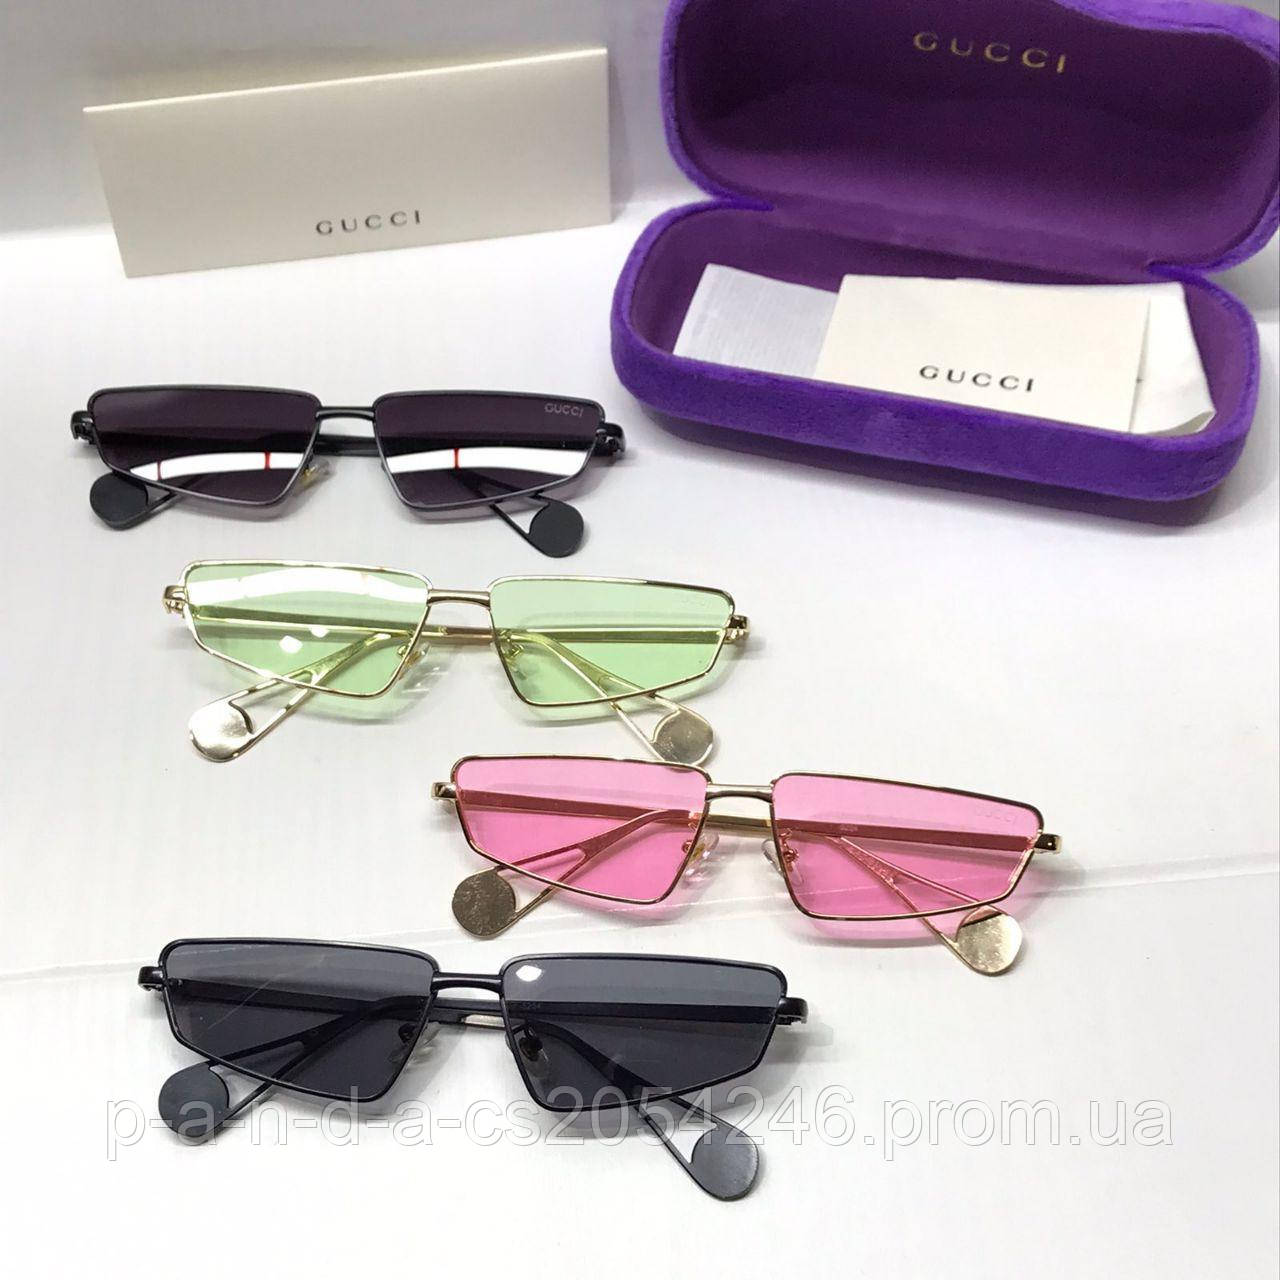 Оригинальные солнцезащитные очки Gucci